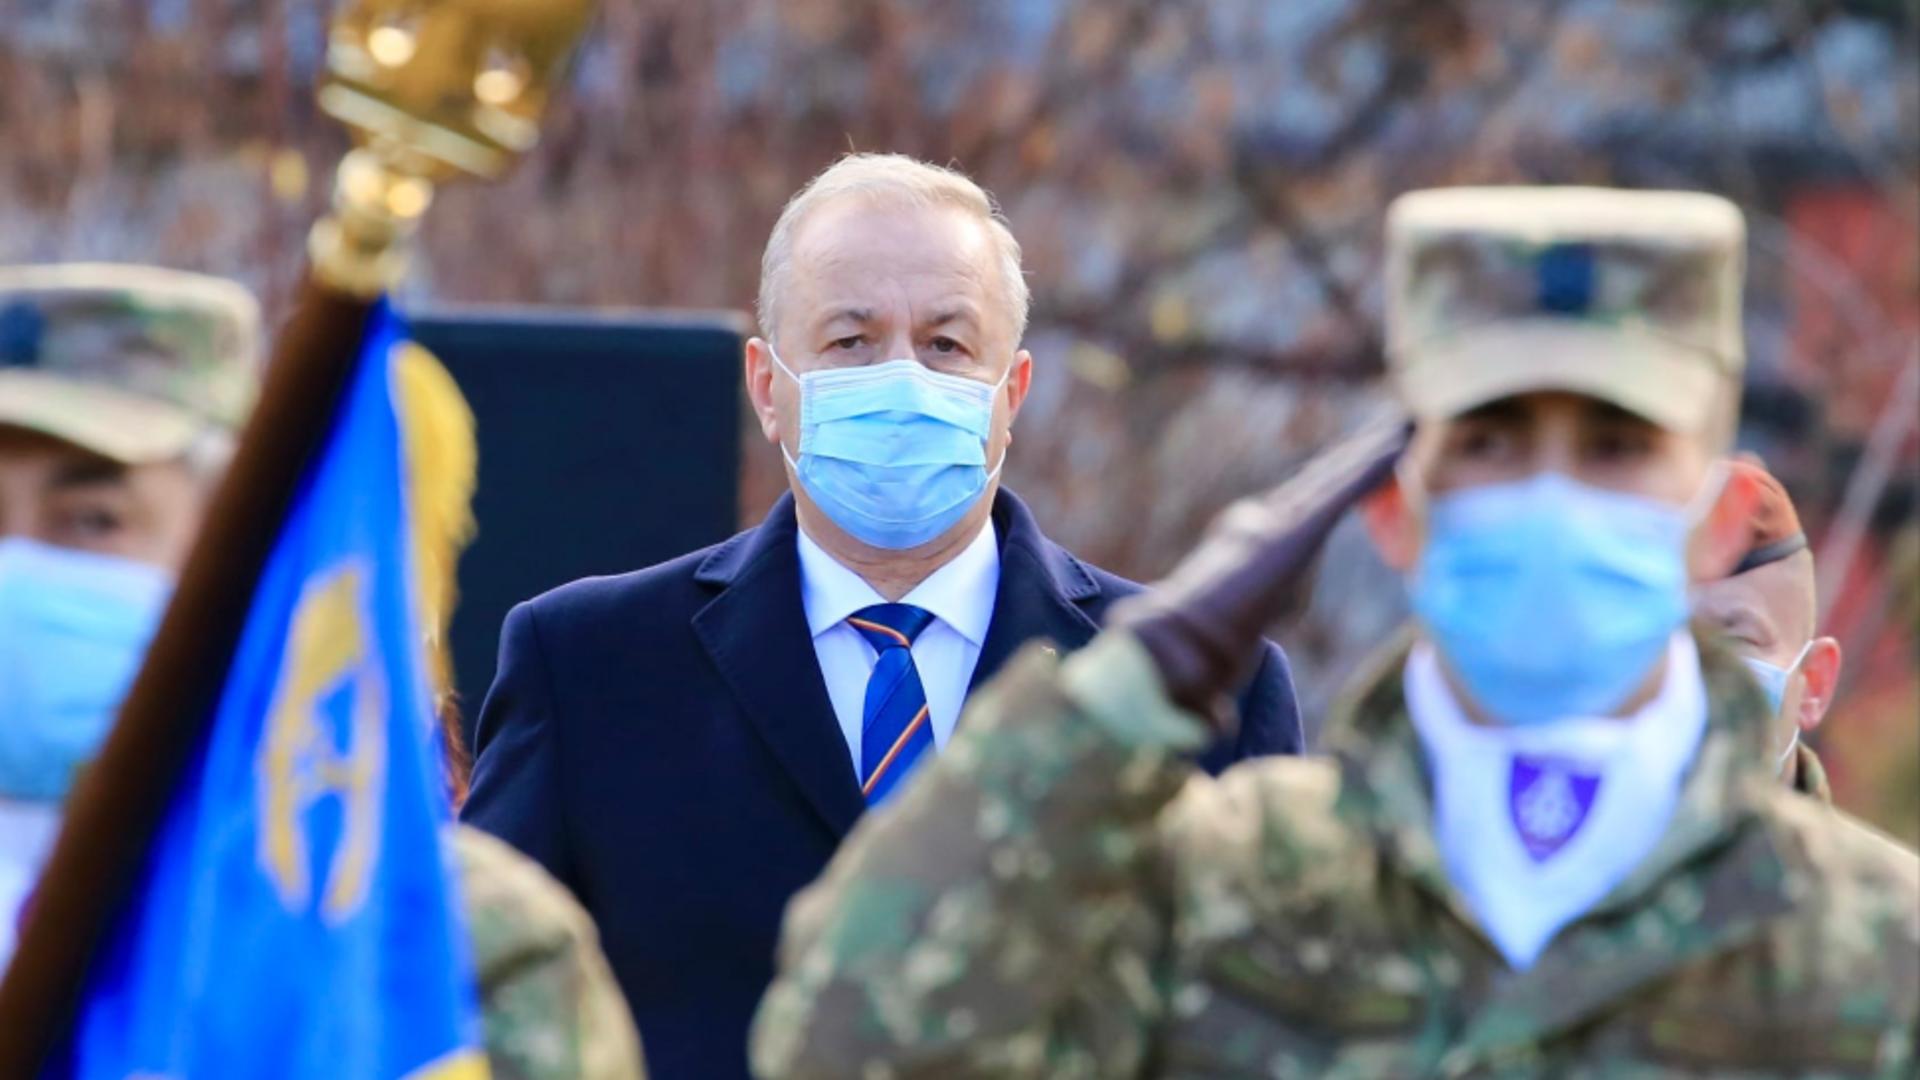 Vasile Dîncu a purtat o mască aproape conformă. Foto/FB